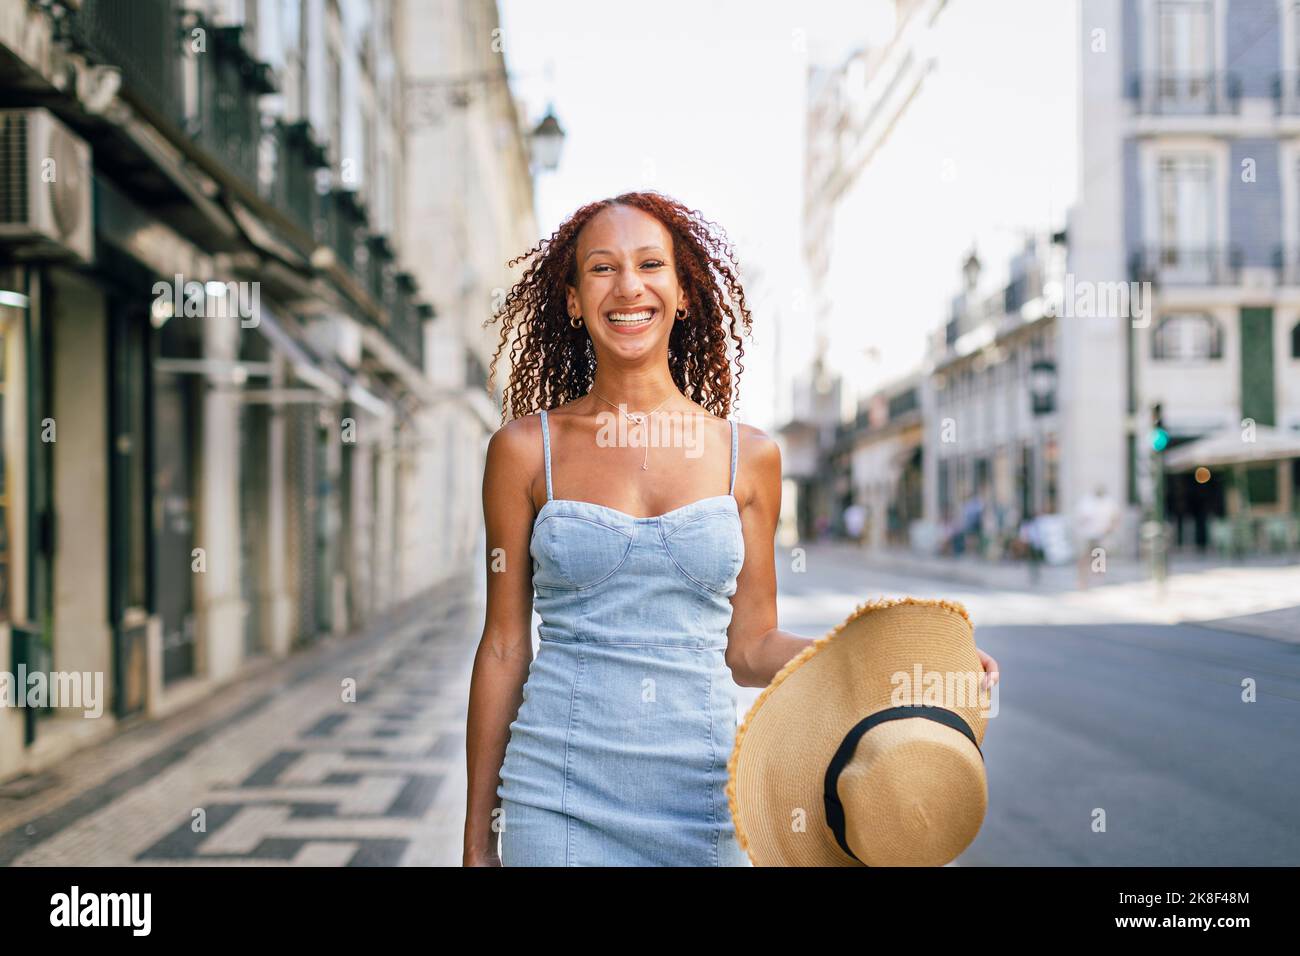 Glückliche junge Frau mit Hut am Fußpfad Stockfoto